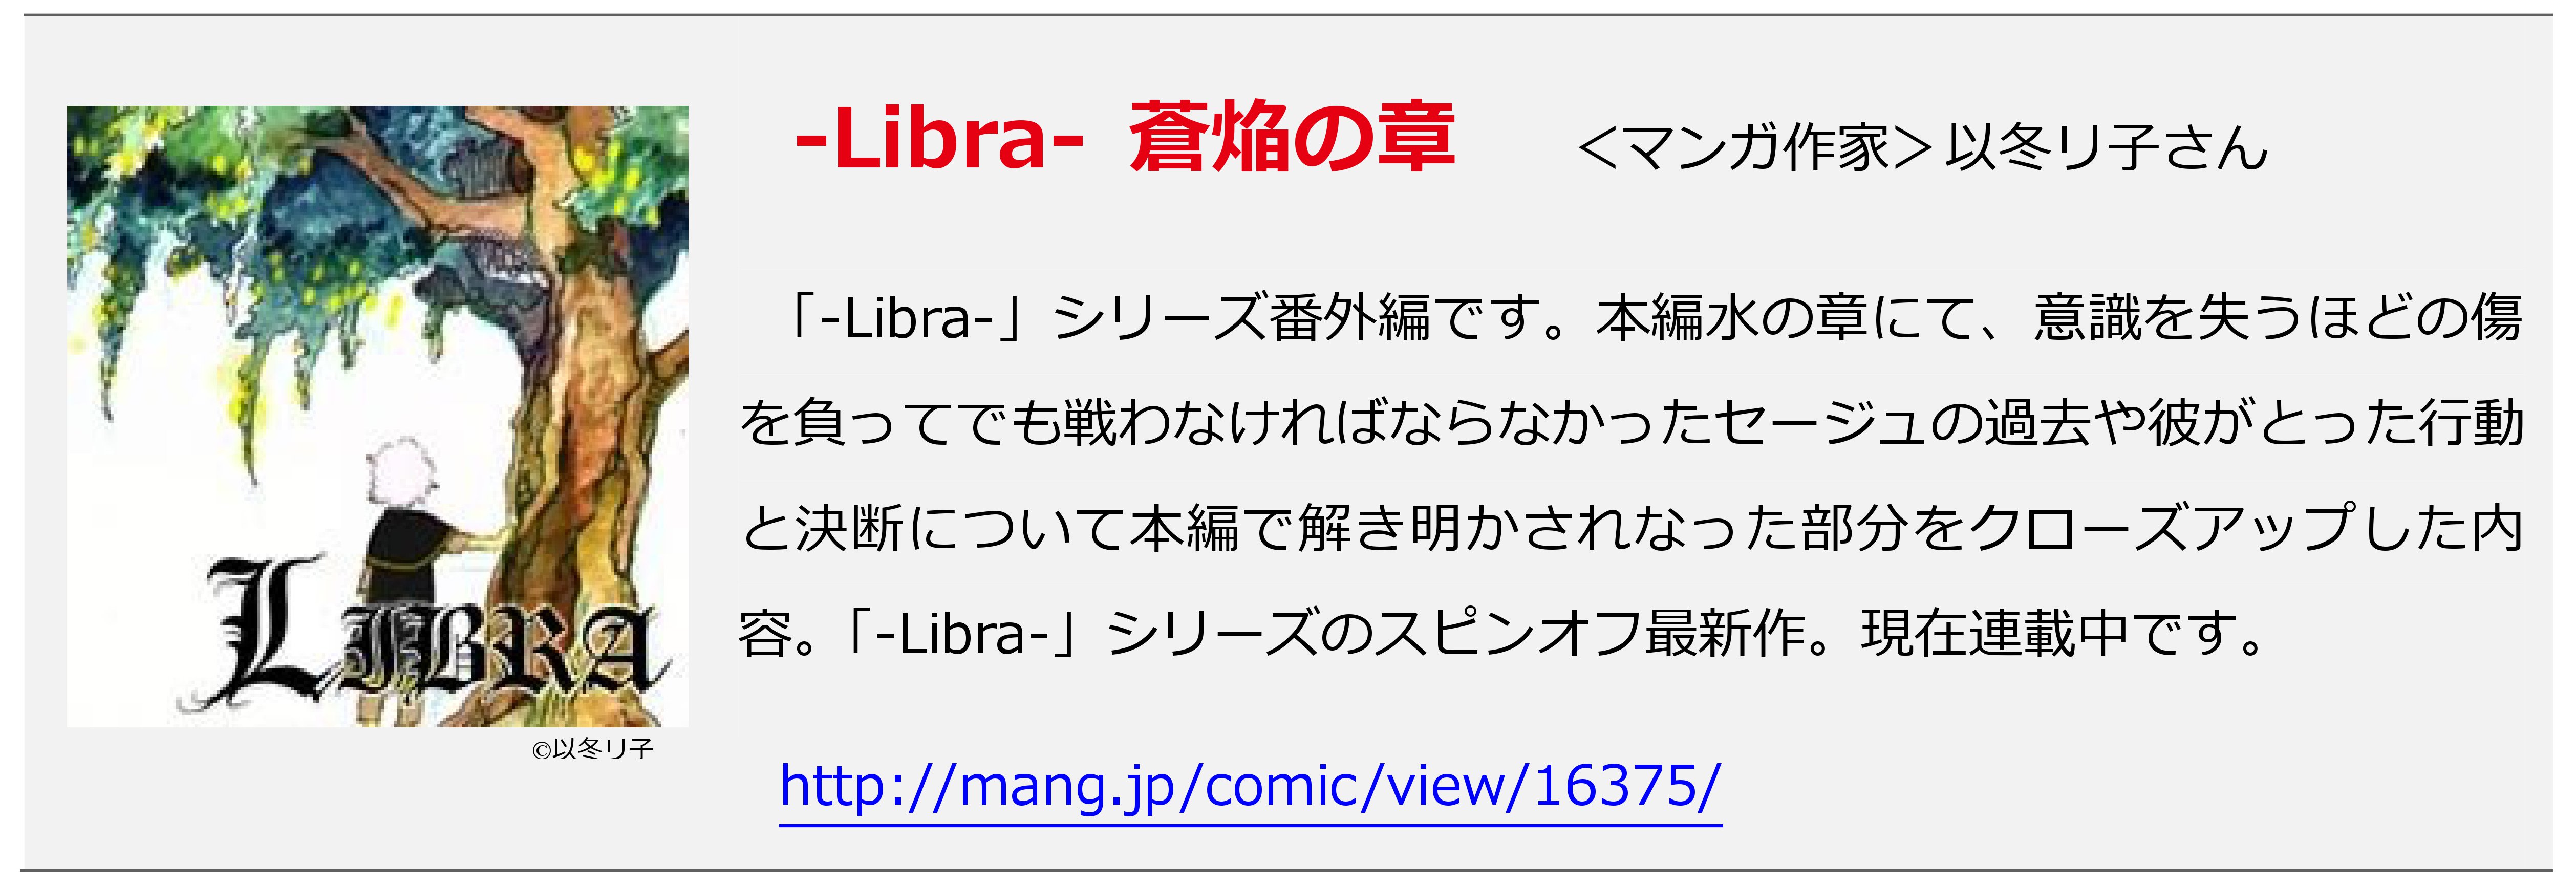 「-Libra- 蒼焔の章」